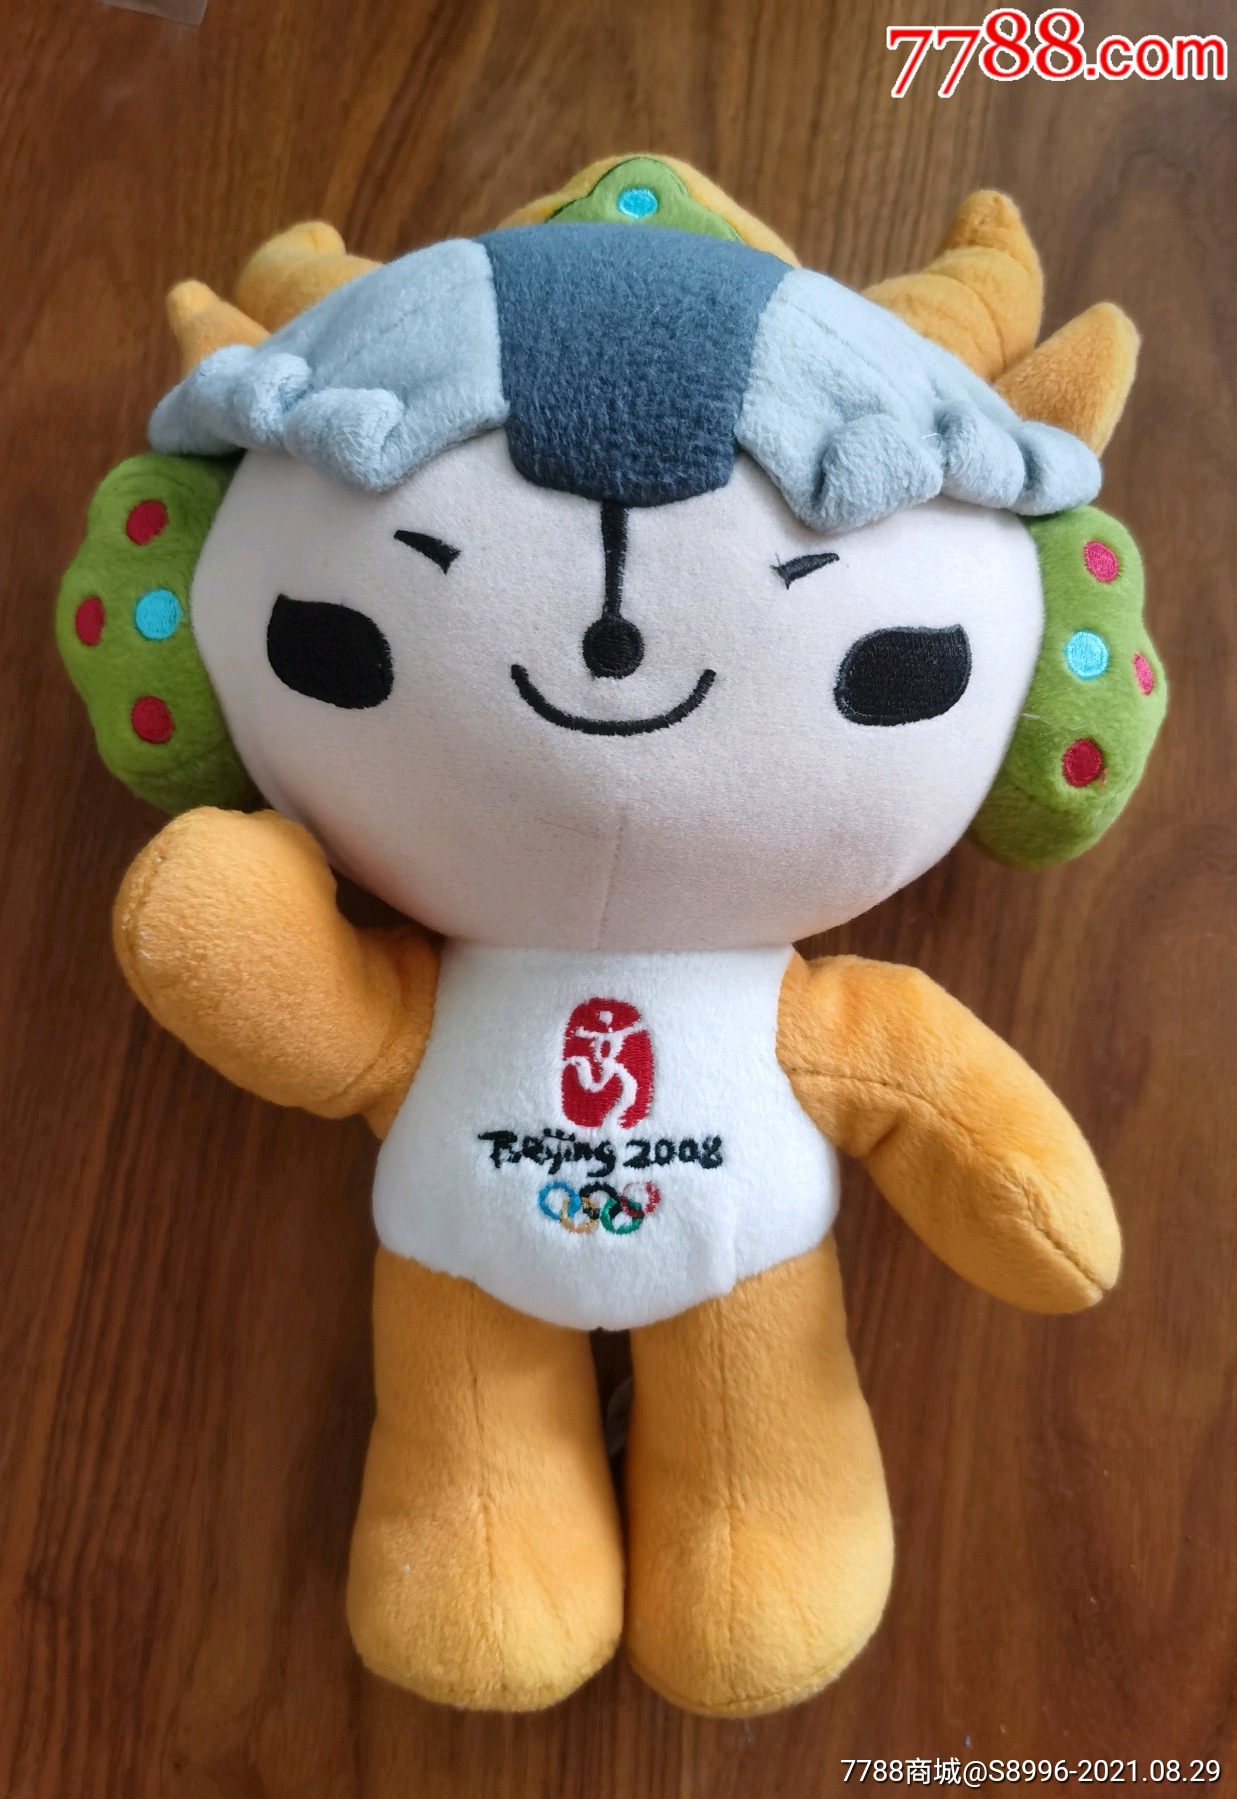 北京2008奥运会吉祥物福娃【迎迎】